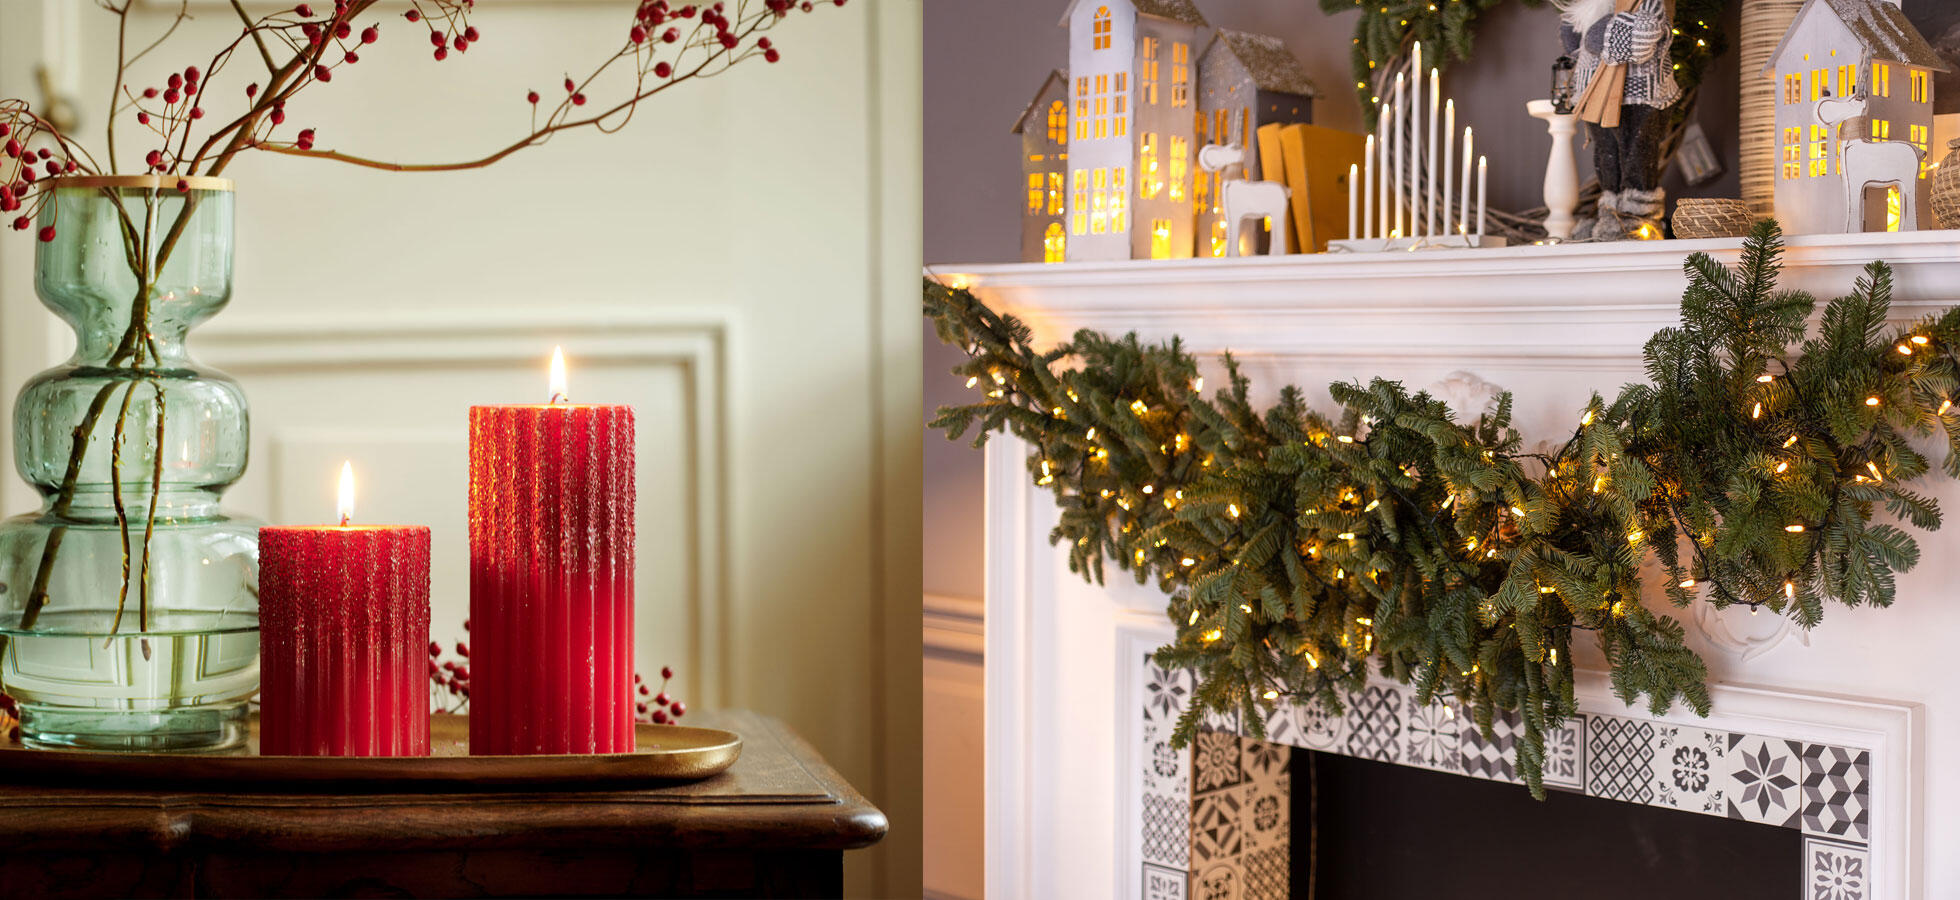 Decoración navideña de chimenea y velas navideñas.